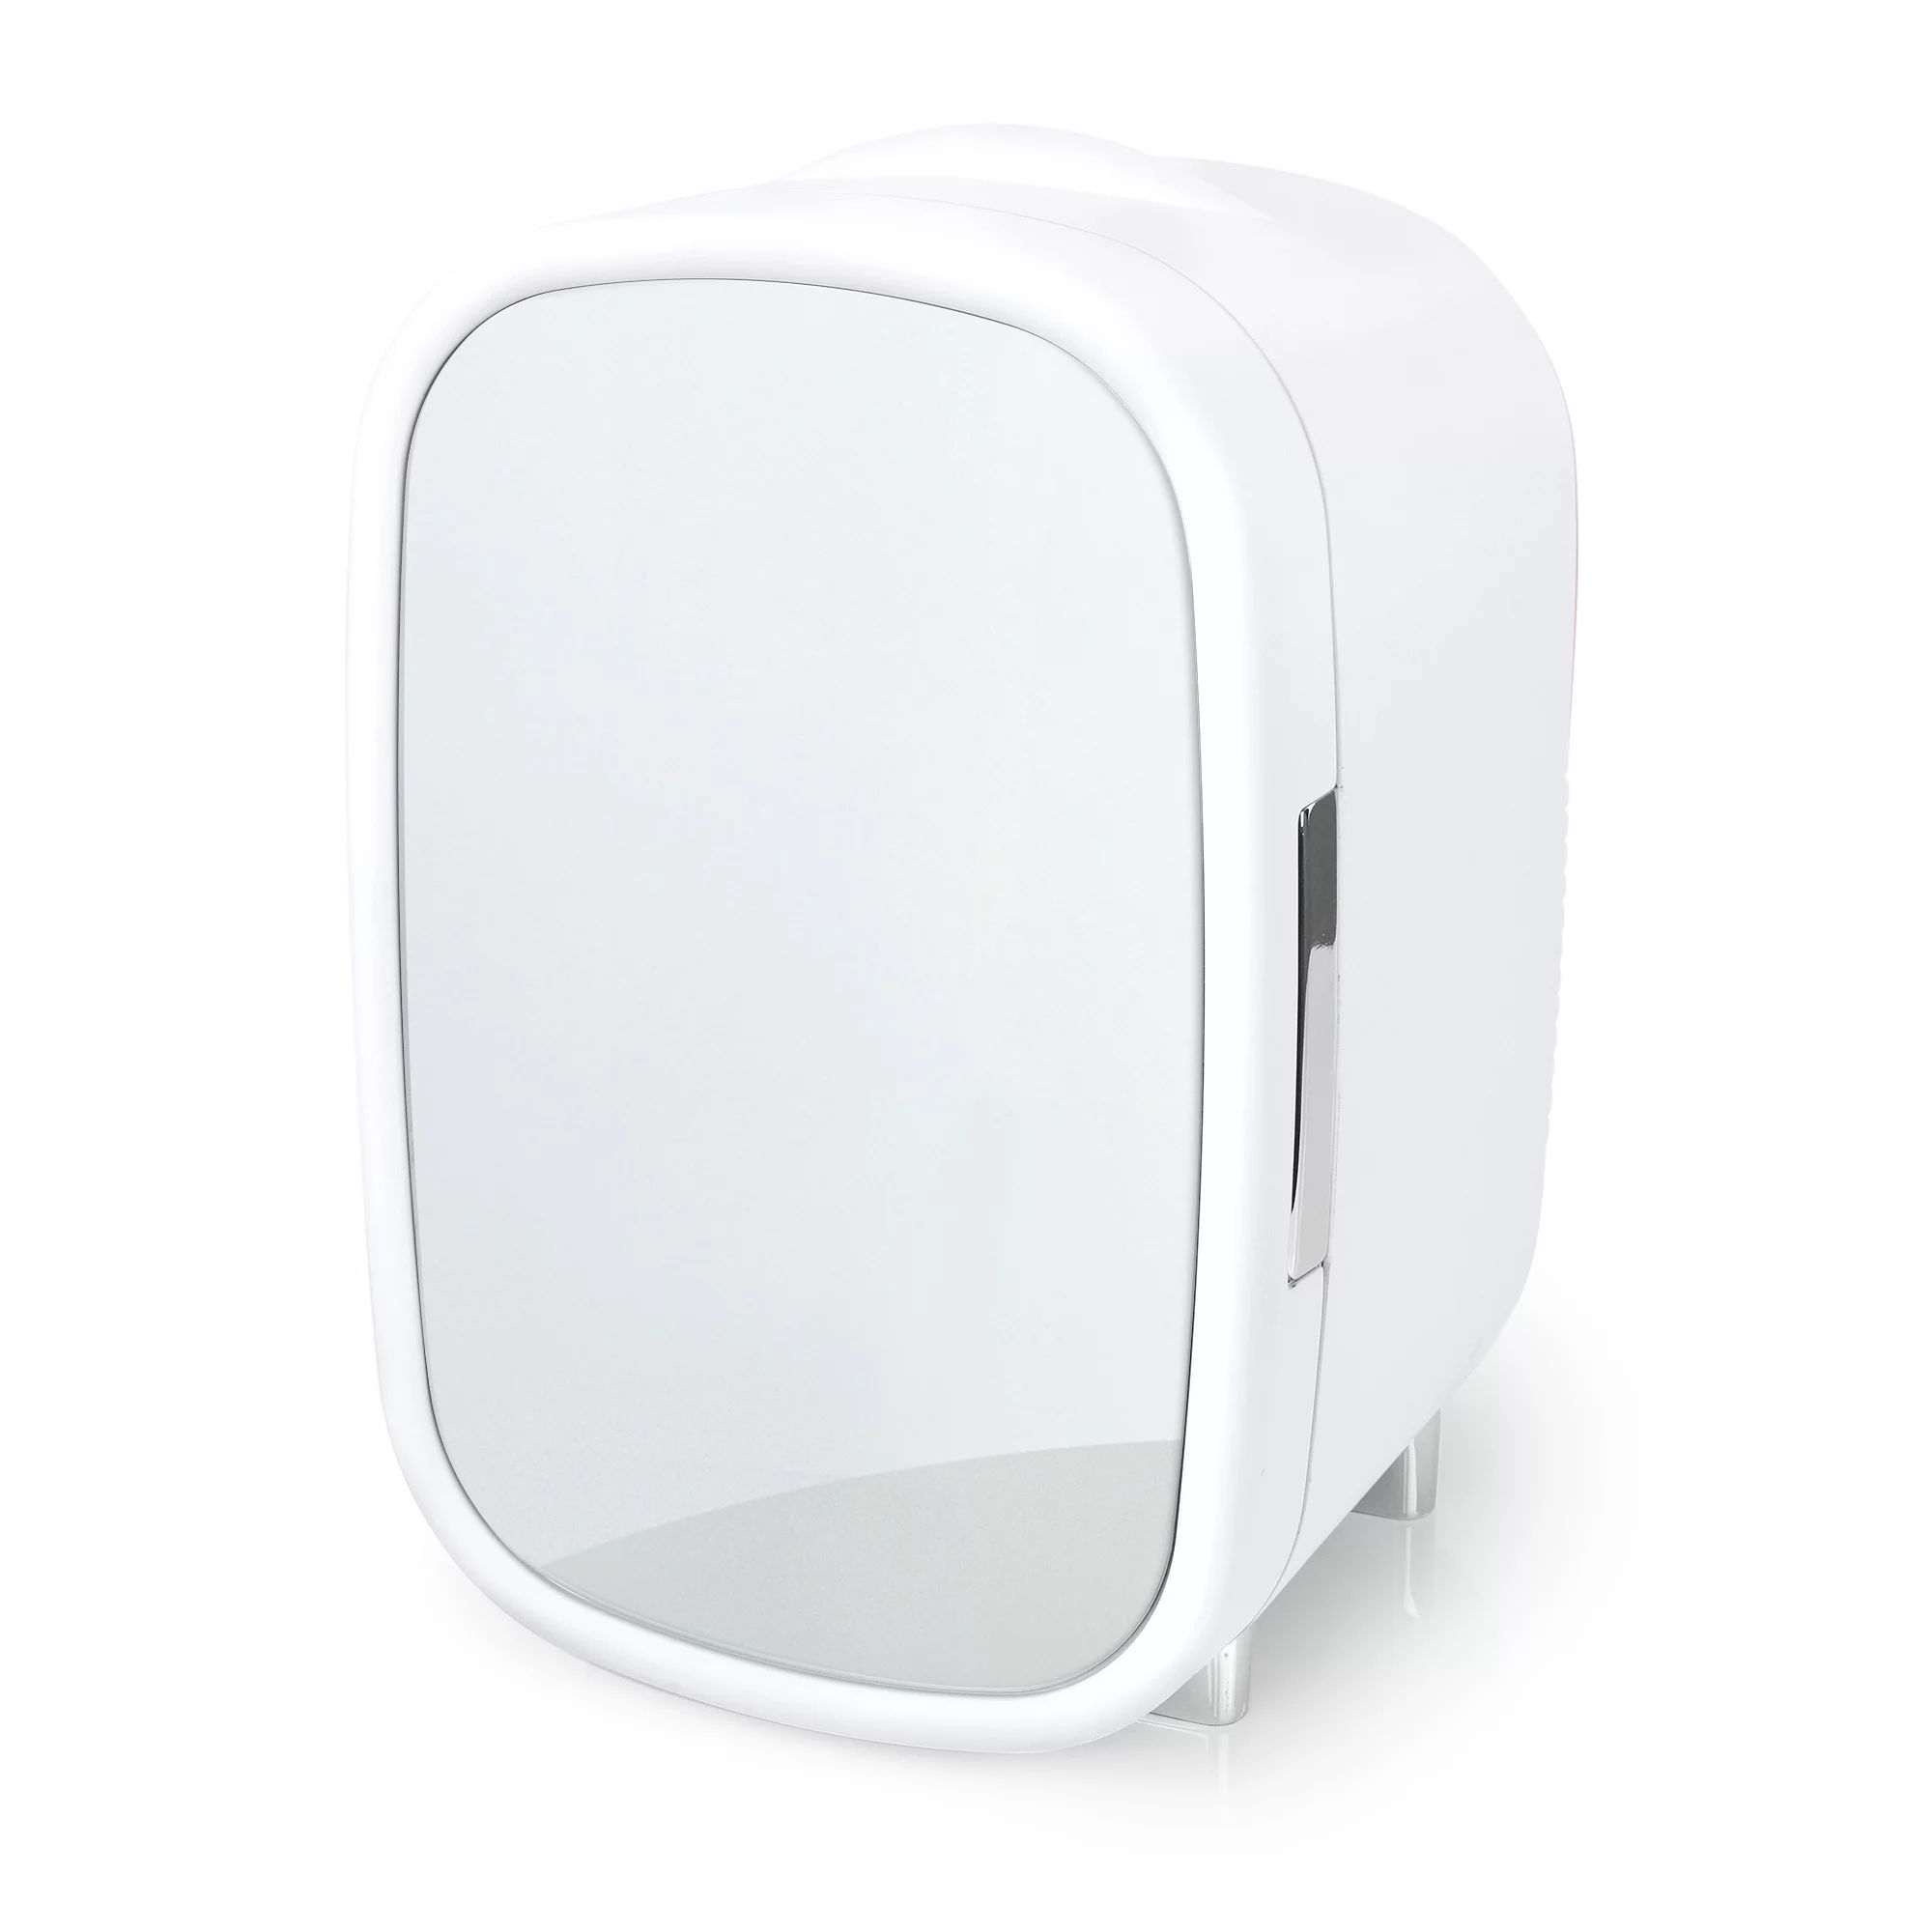 Personal Chiller Cosmetic Mini Fridge with Mirror Door for Vanity, White - Walmart.com | Walmart (US)